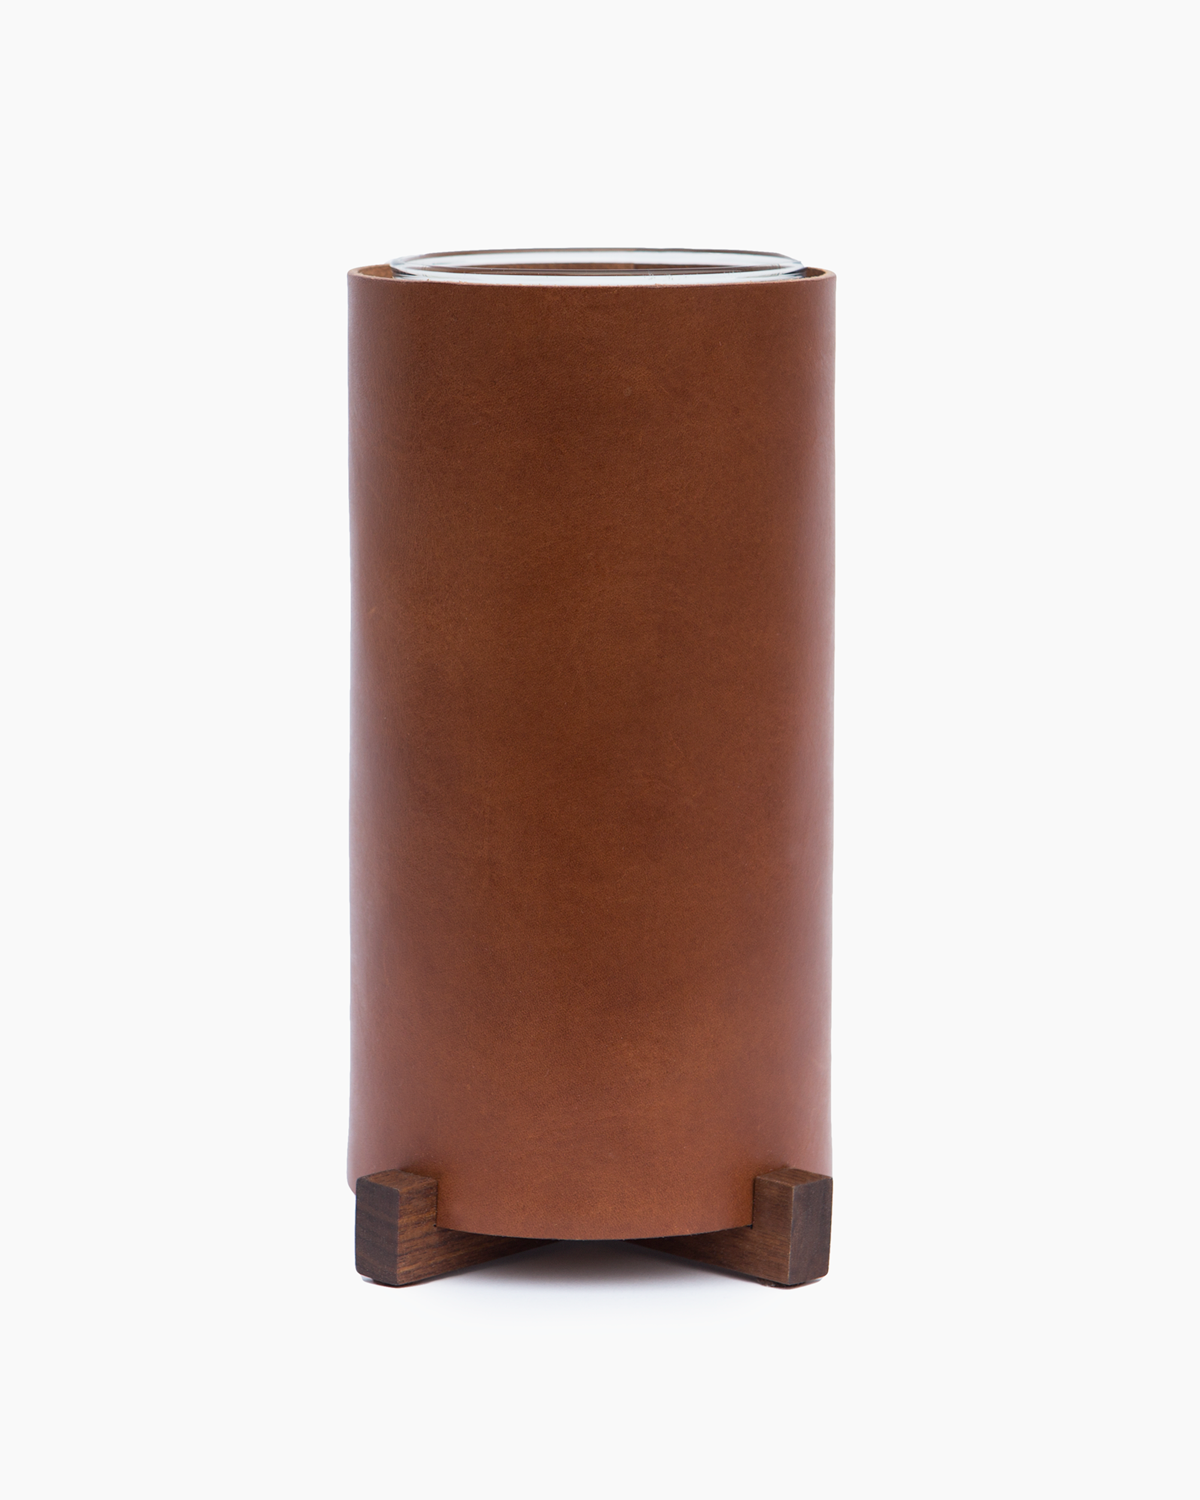 Leather Vase with Walnut Base